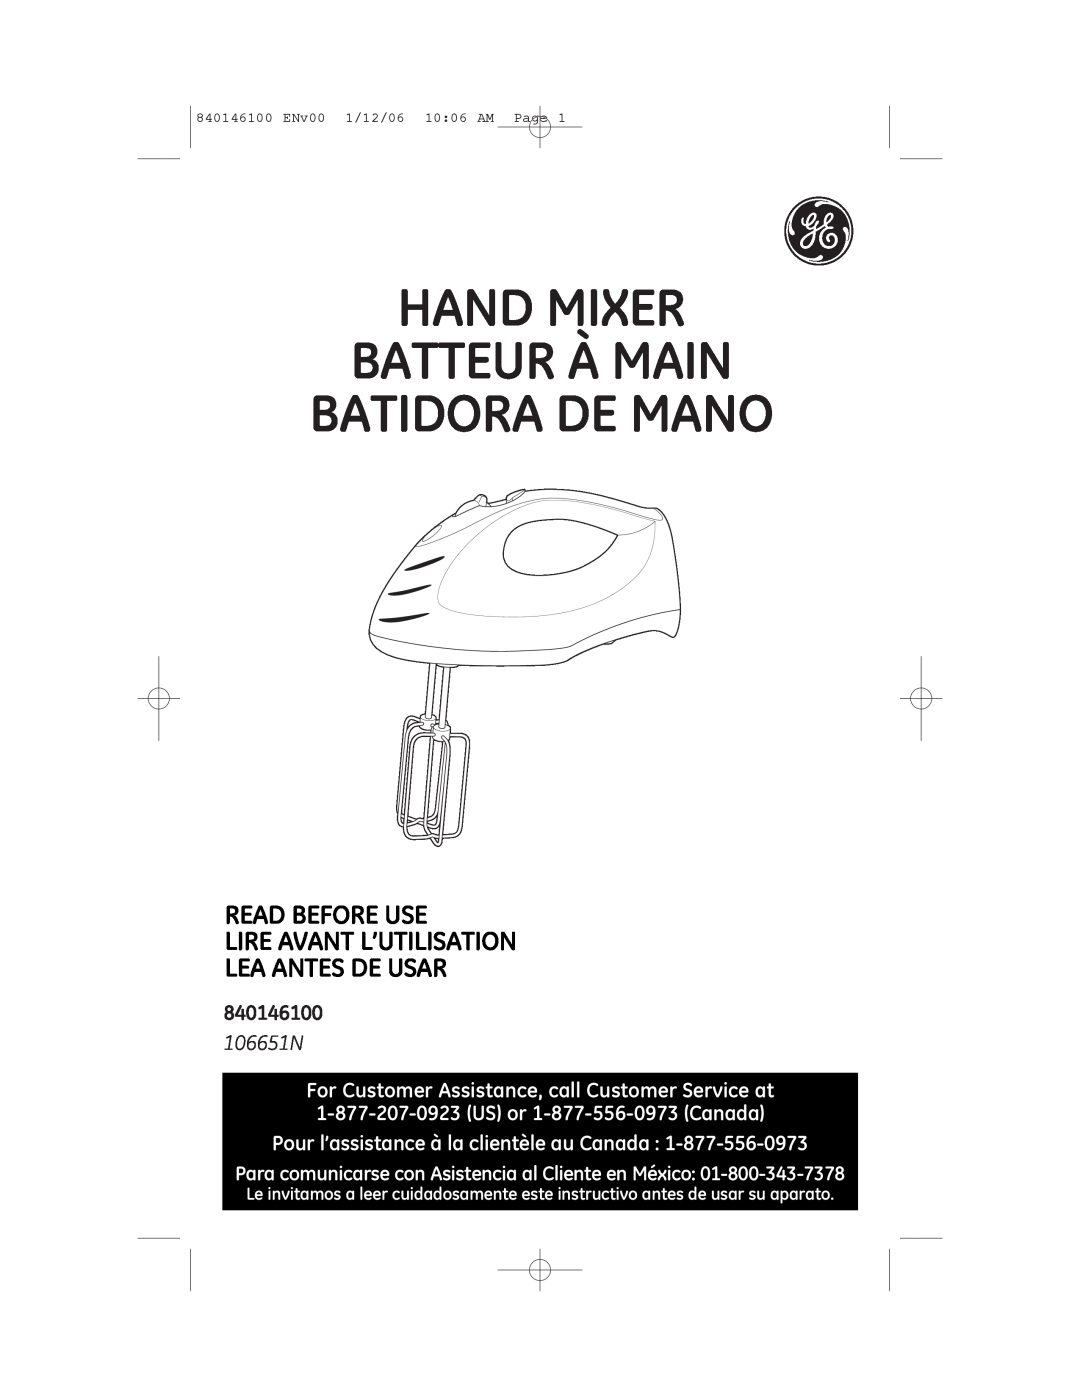 GE 106651N manual 840146100, Hand Mixer Batteur À Main Batidora De Mano, Pour l’assistance à la clientèle au Canada 